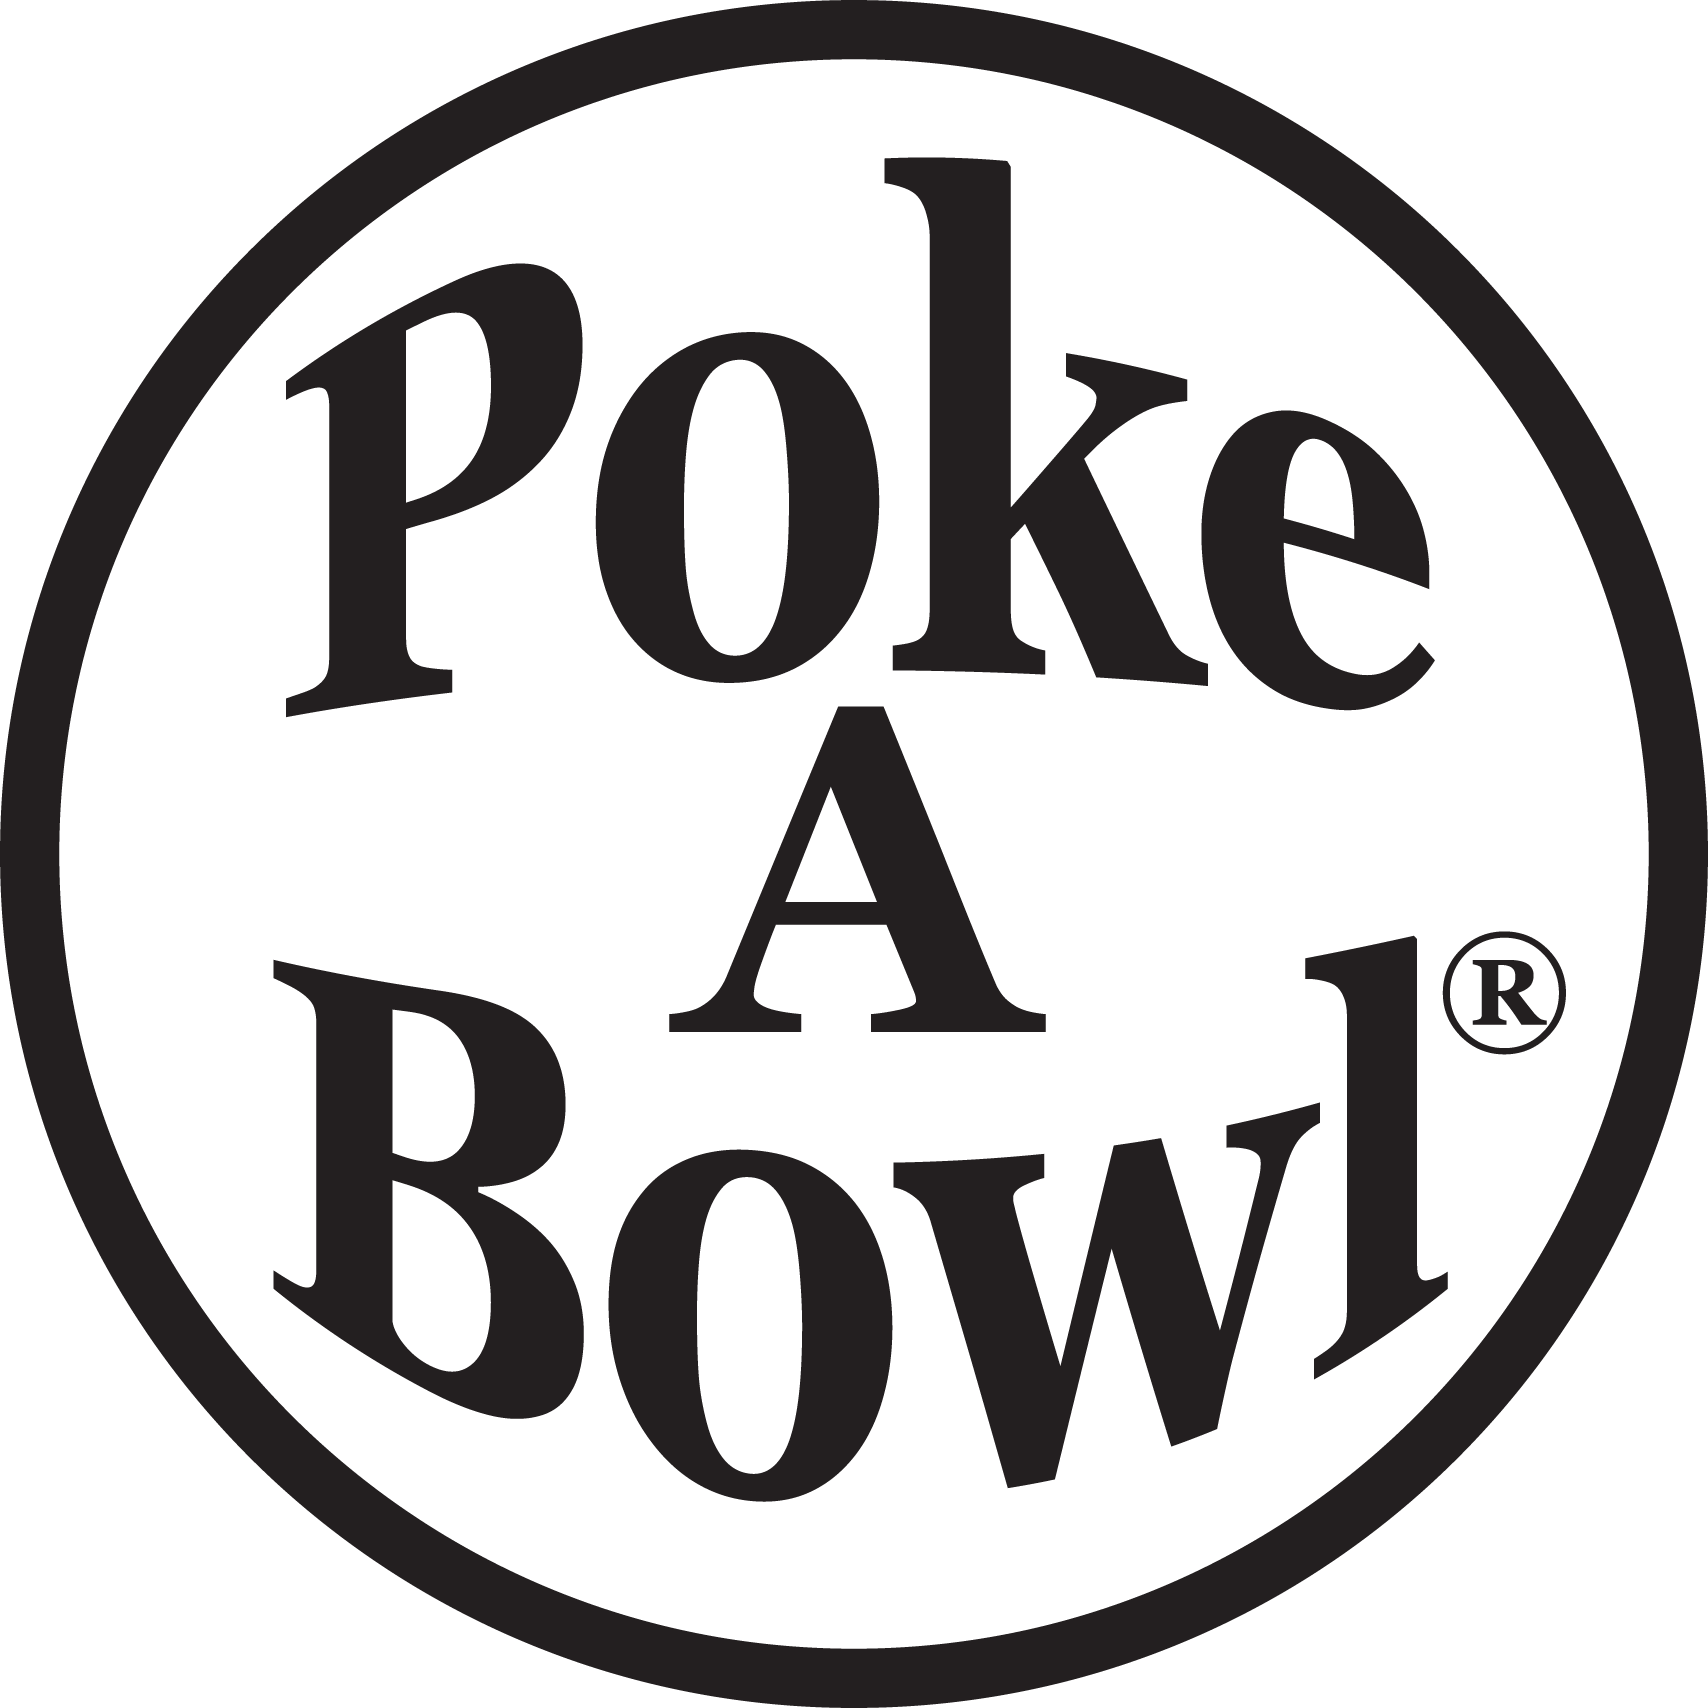 1643841764784_poke-a-bowl-poster-logo.png